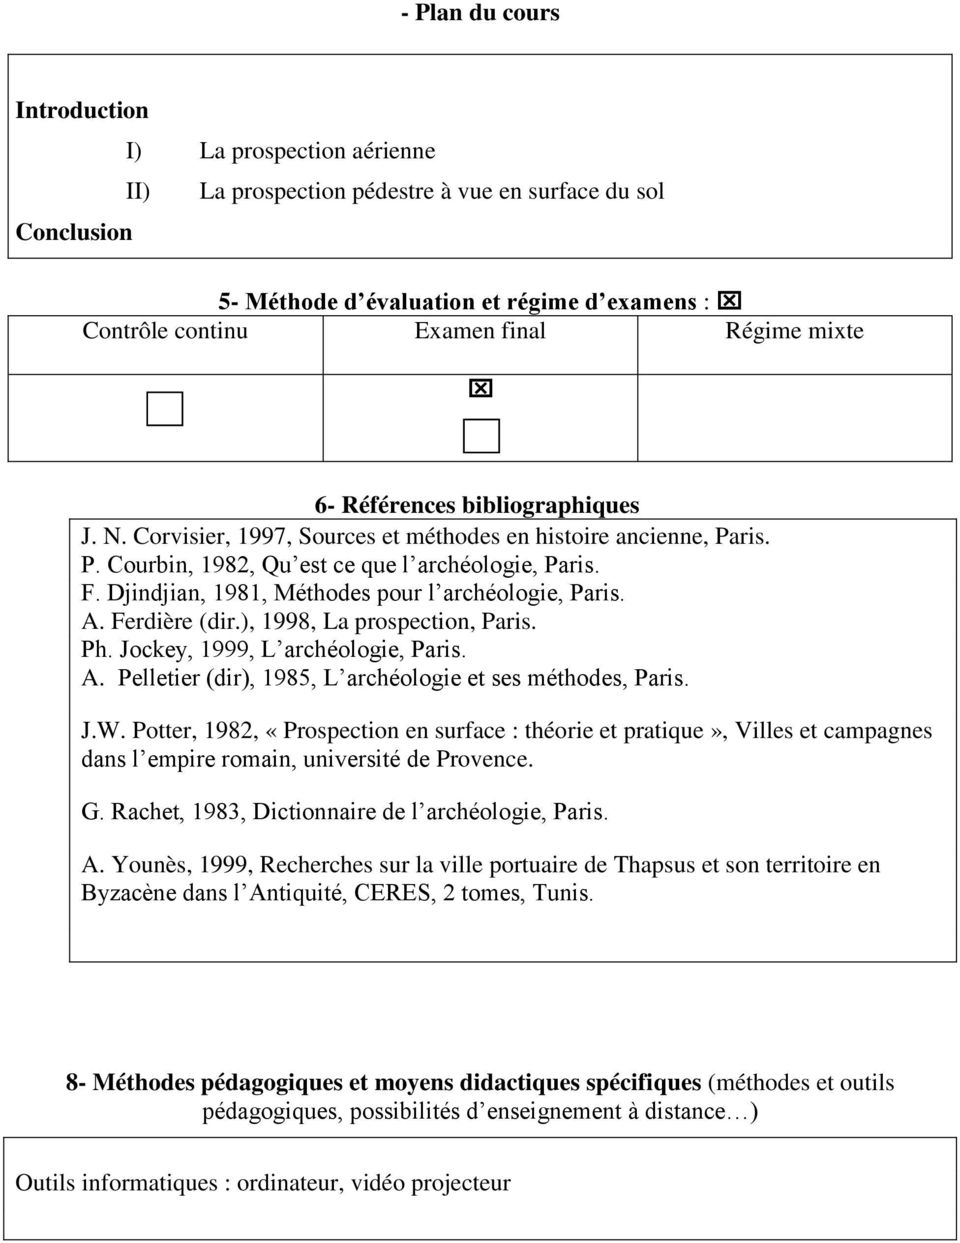 Djindjian, 1981, Méthodes pour l archéologie, Paris. A. Ferdière (dir.), 1998, La prospection, Paris. Ph. Jockey, 1999, L archéologie, Paris. A. Pelletier (dir), 1985, L archéologie et ses méthodes, Paris.